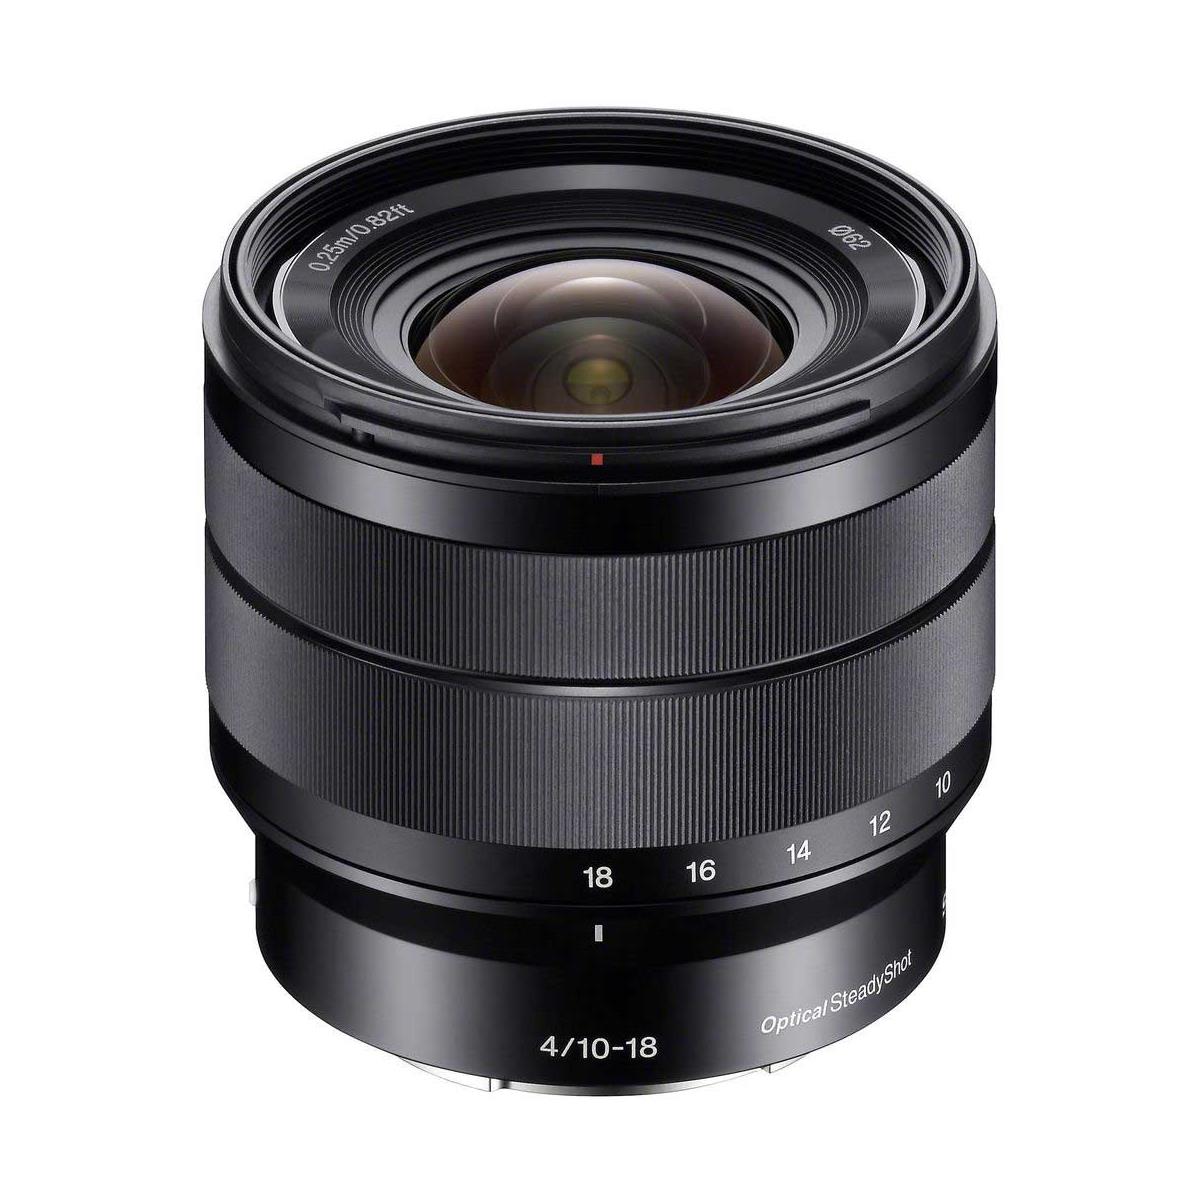 Image of Sony 10-18mm f/4 OSS Lens for Sony E